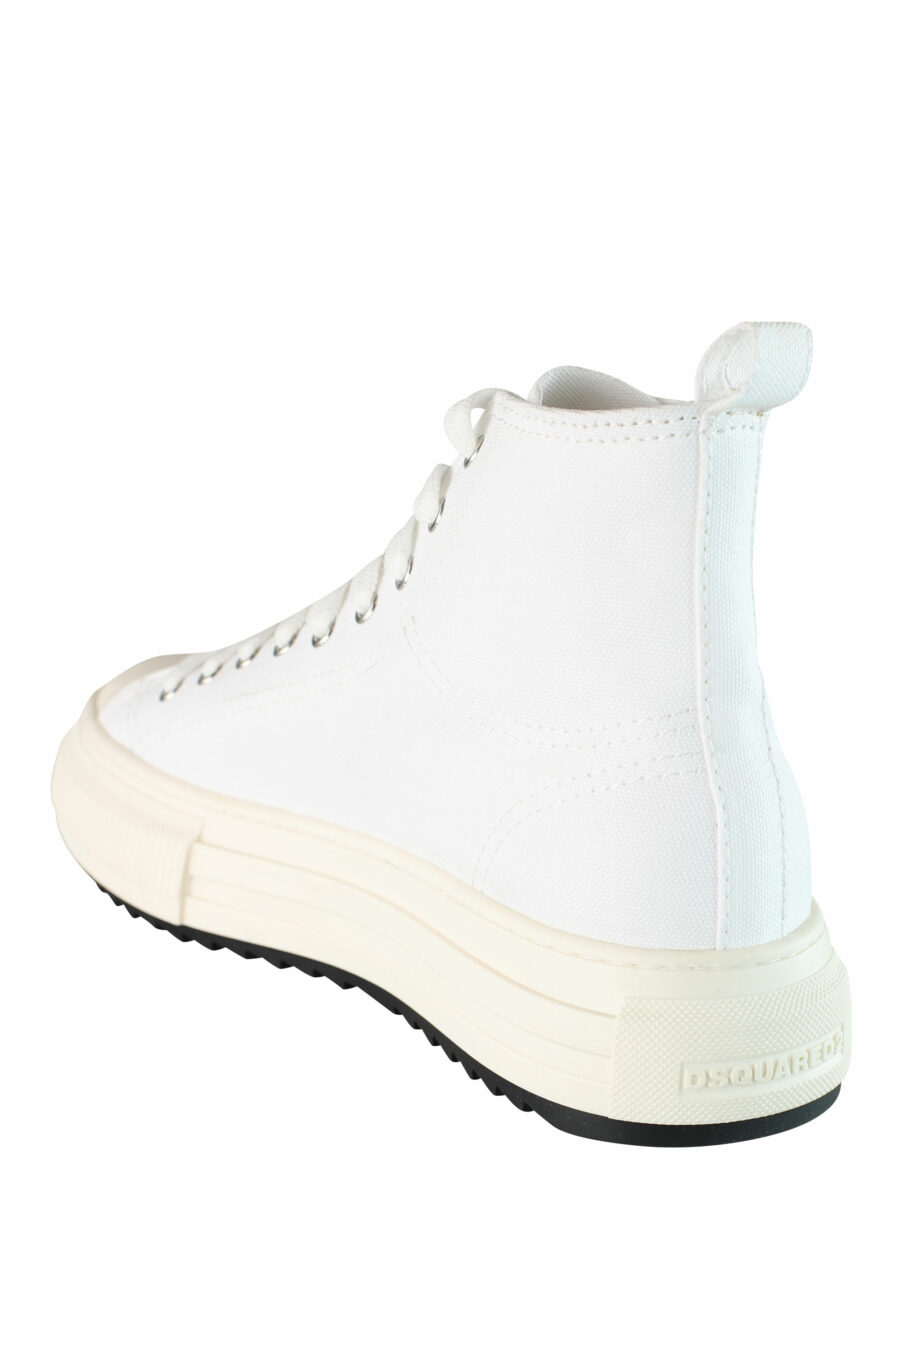 Sapatilhas brancas estilo bota com plataforma e mini logótipo - IMG 1500